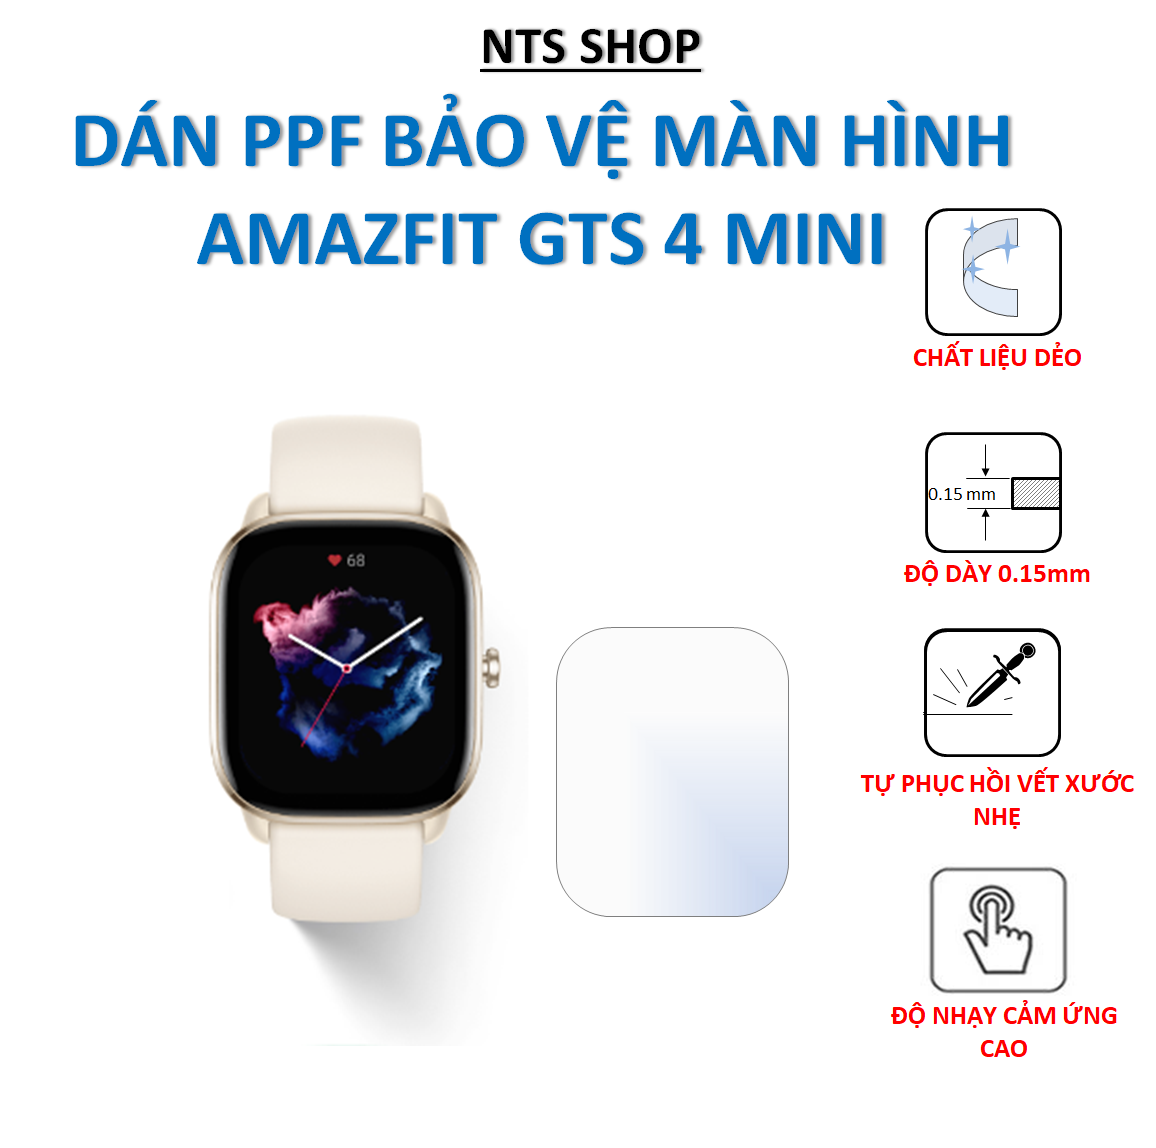 Dán PPF chống xước màn hình Amazfit GTS 4 mini